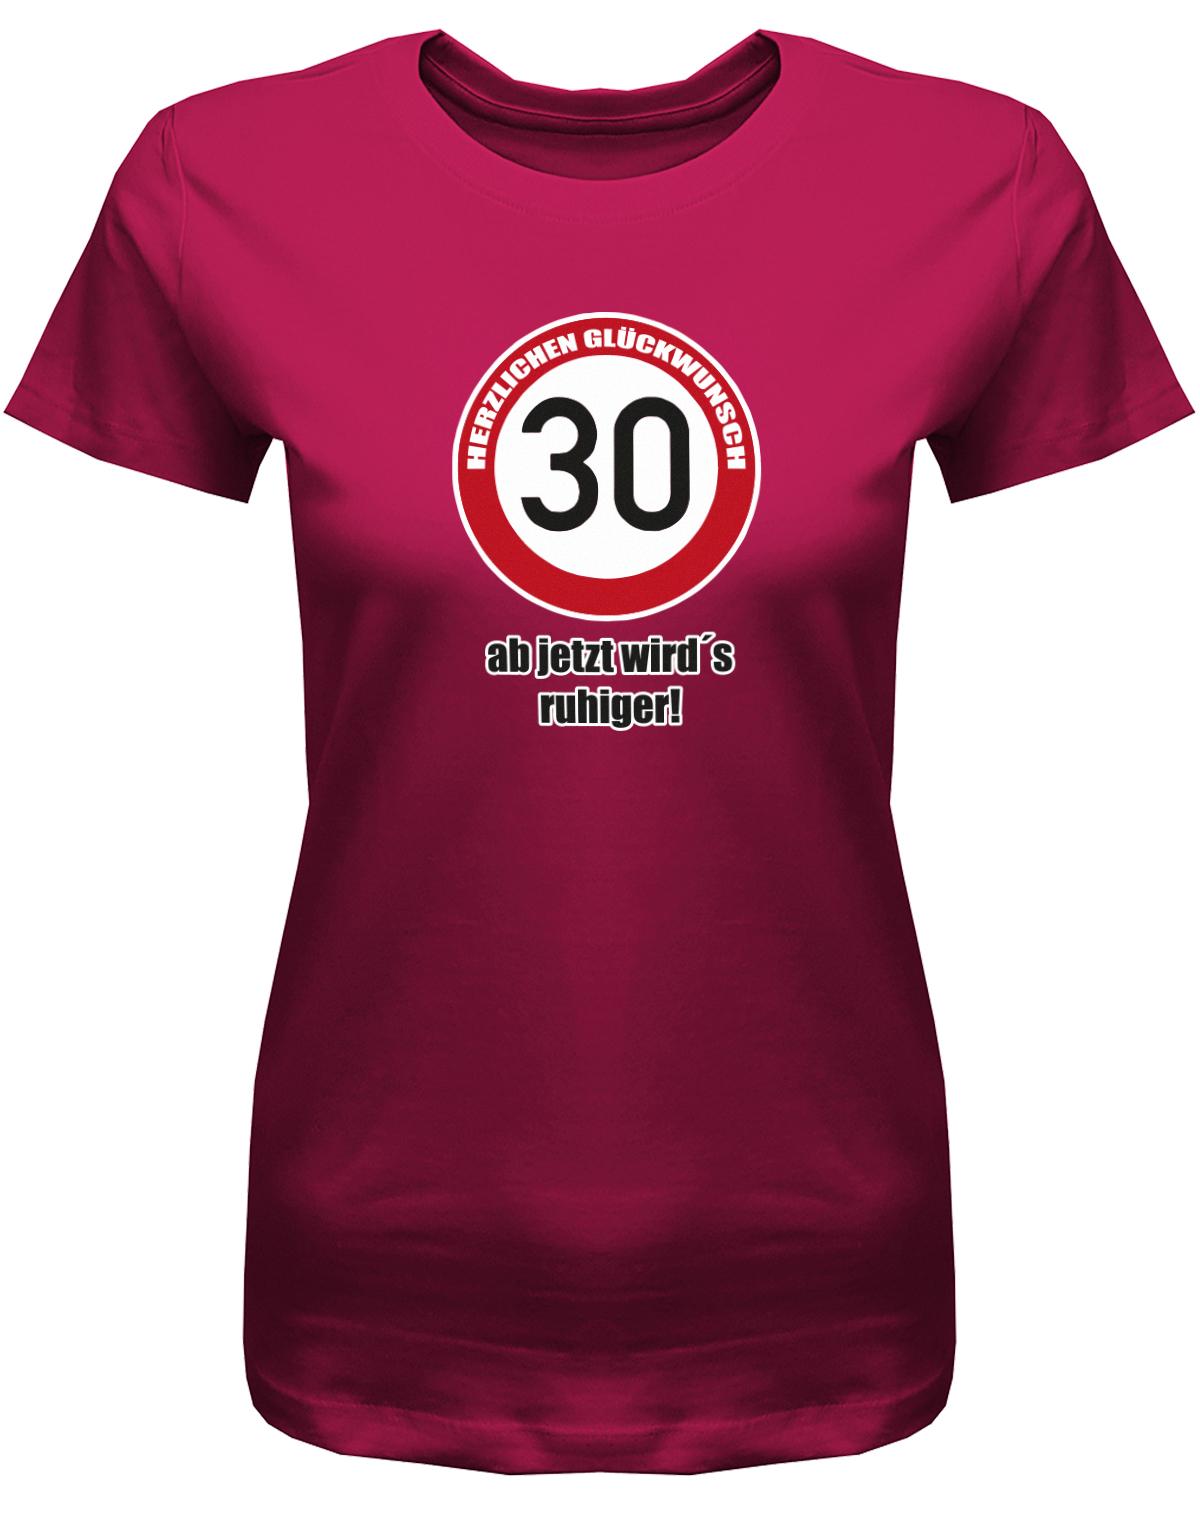 Lustiges T-Shirt zum 30. Geburtstag für die Frau Bedruckt mit Herzlichen Glückwunsch 30 Verkehrsschild ab jetzt wird’s ruhiger.  Sorbet